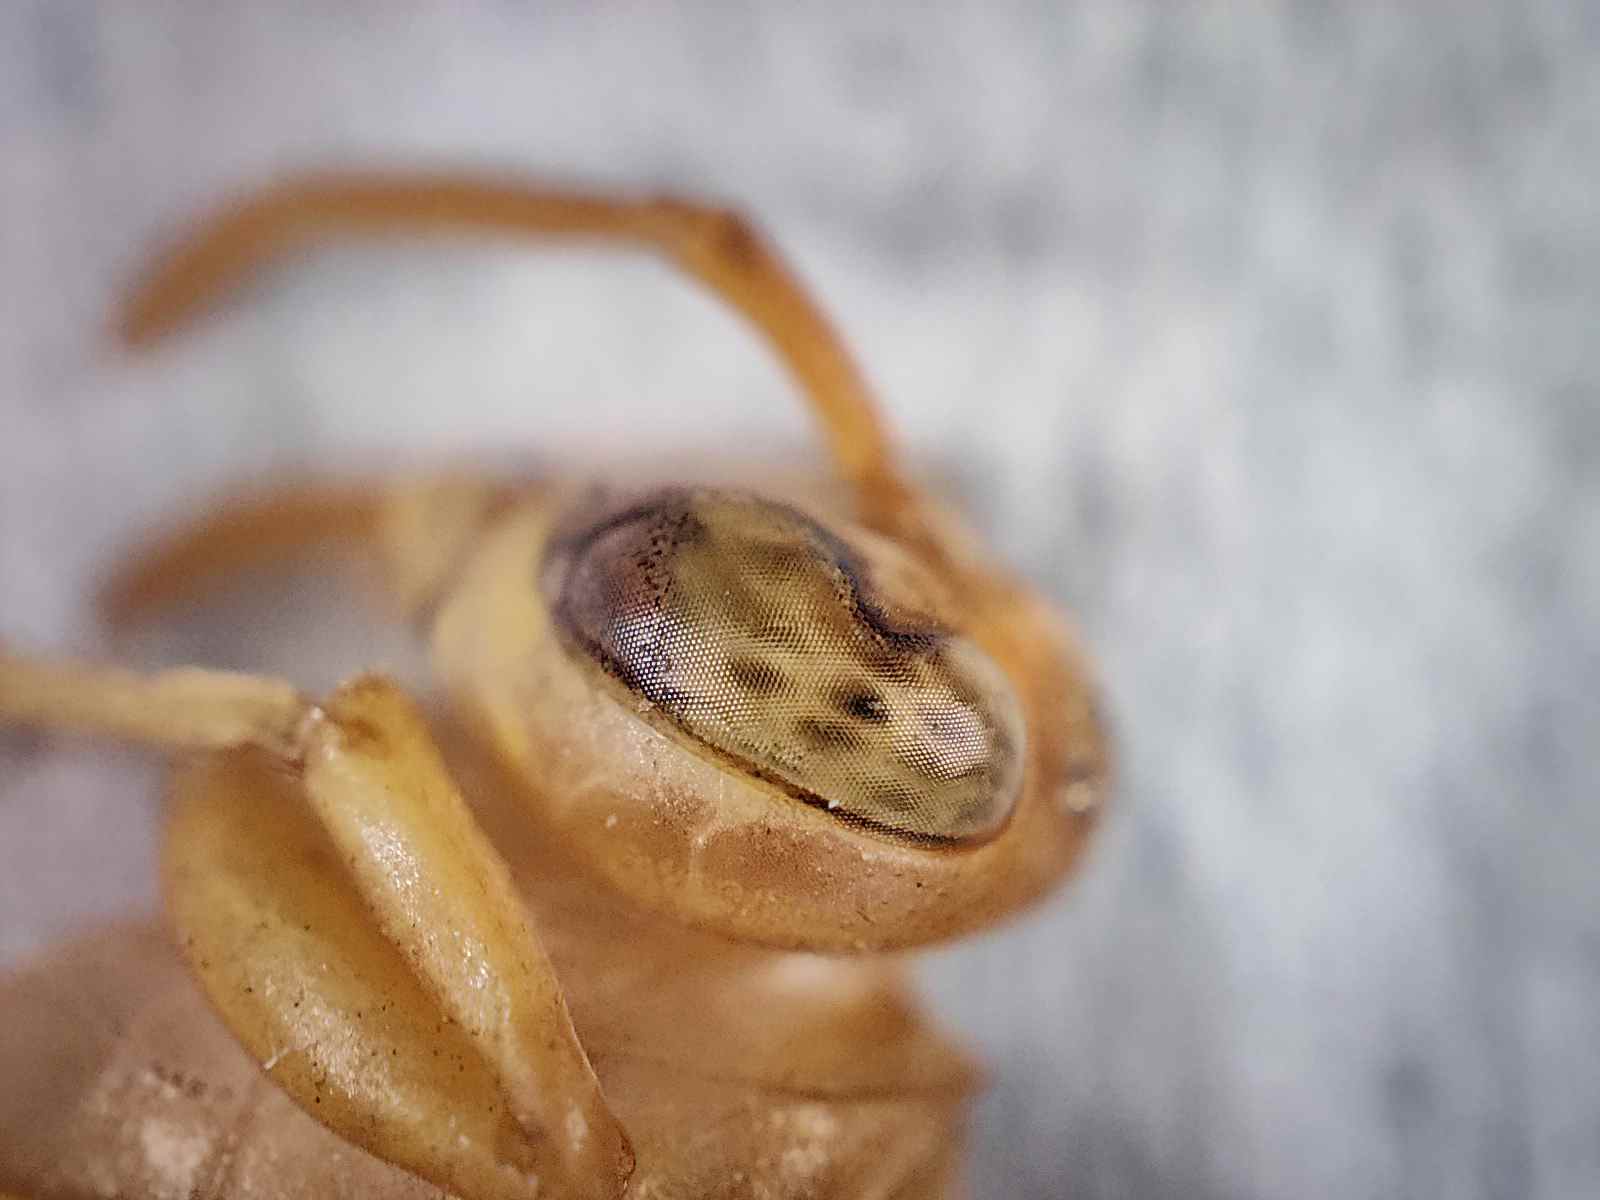 Vue macro des ommatidies ou œil composé d'une guêpe photographiée avec la caméra microscope du Realme GT 2 Pro.